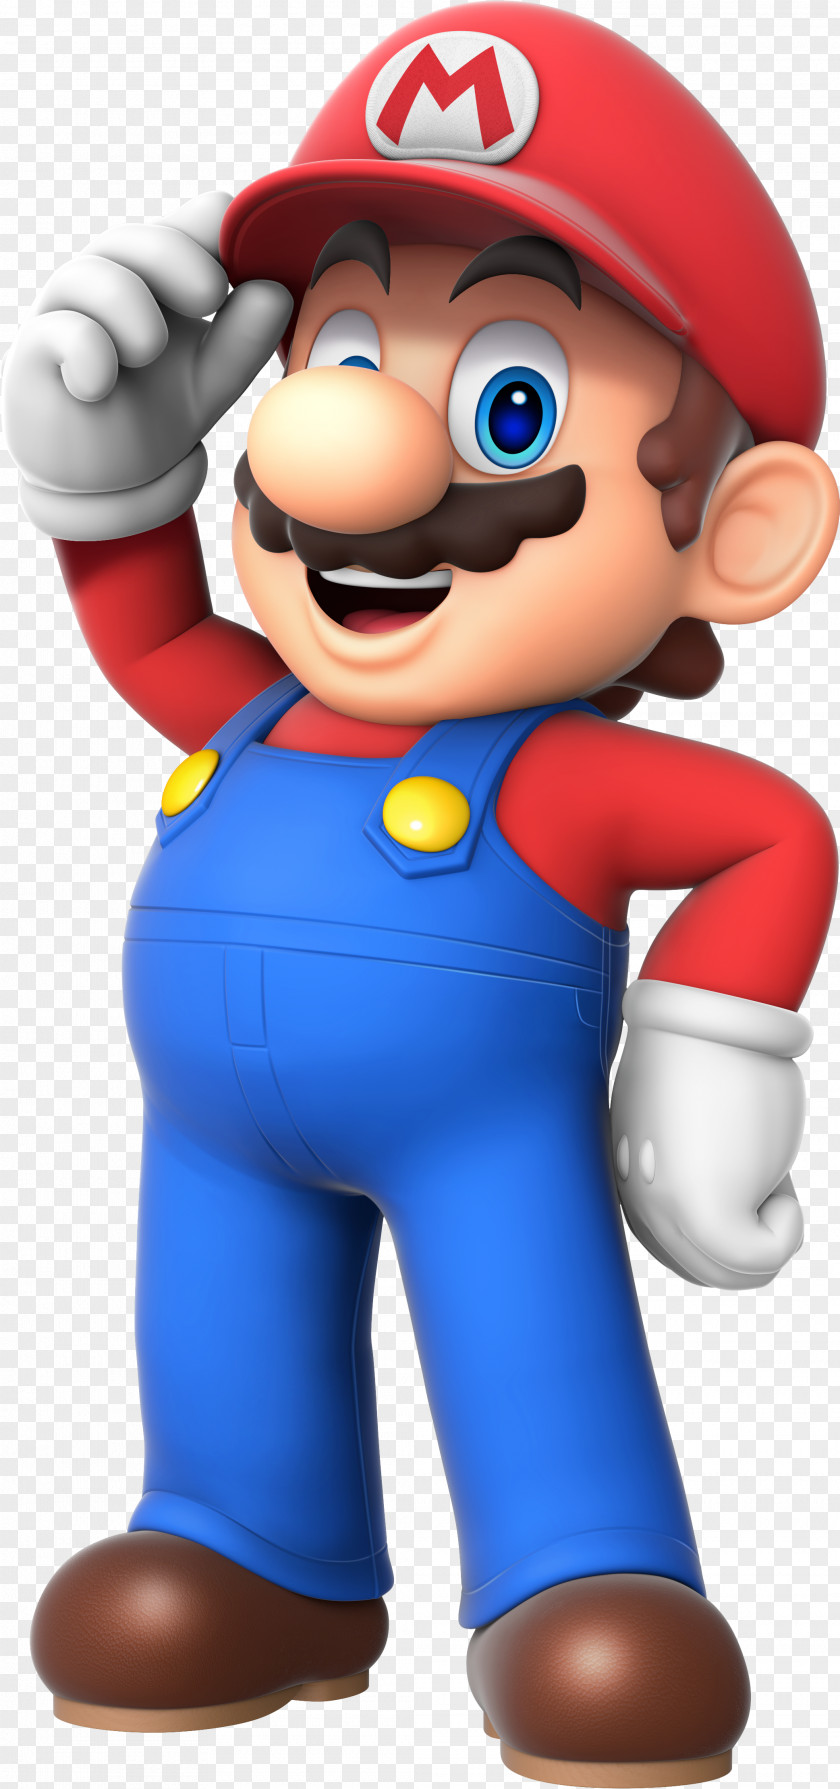 Mario Super Bros. & Wario Luigi Rendering PNG